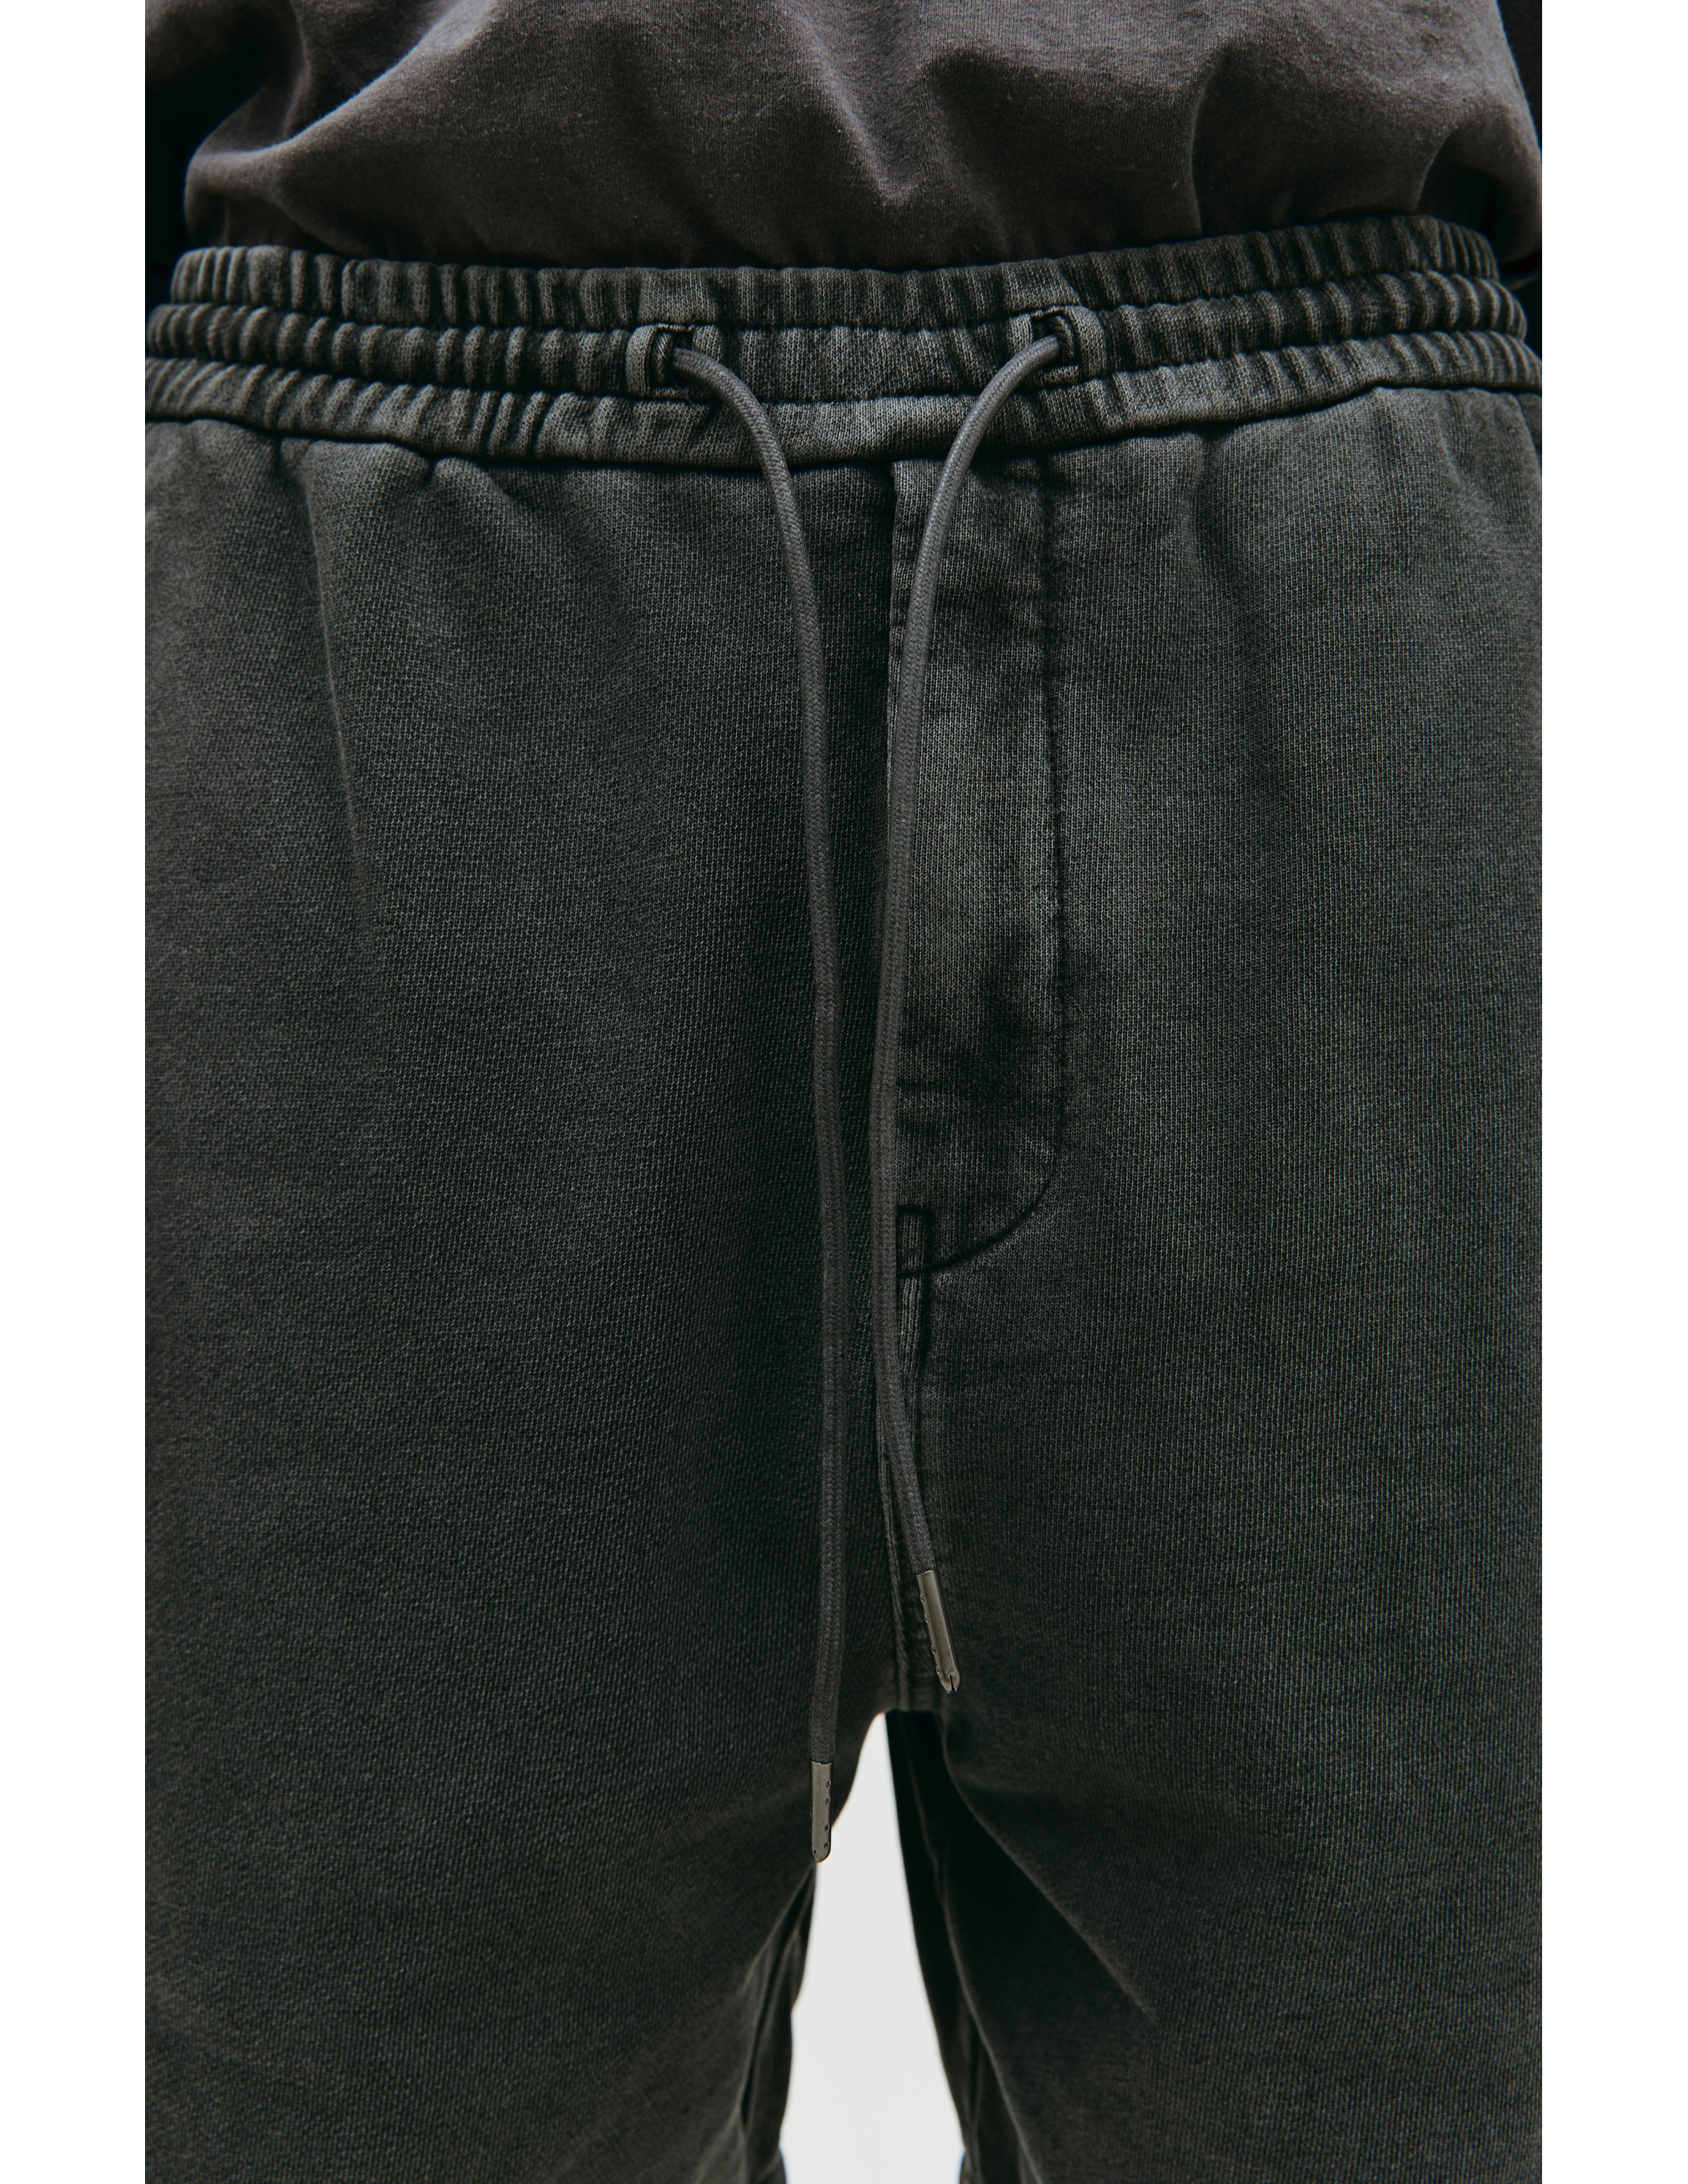 Спортивные брюки с выстиранным эффектом Juun.J JC3221P623, размер 52 - фото 4